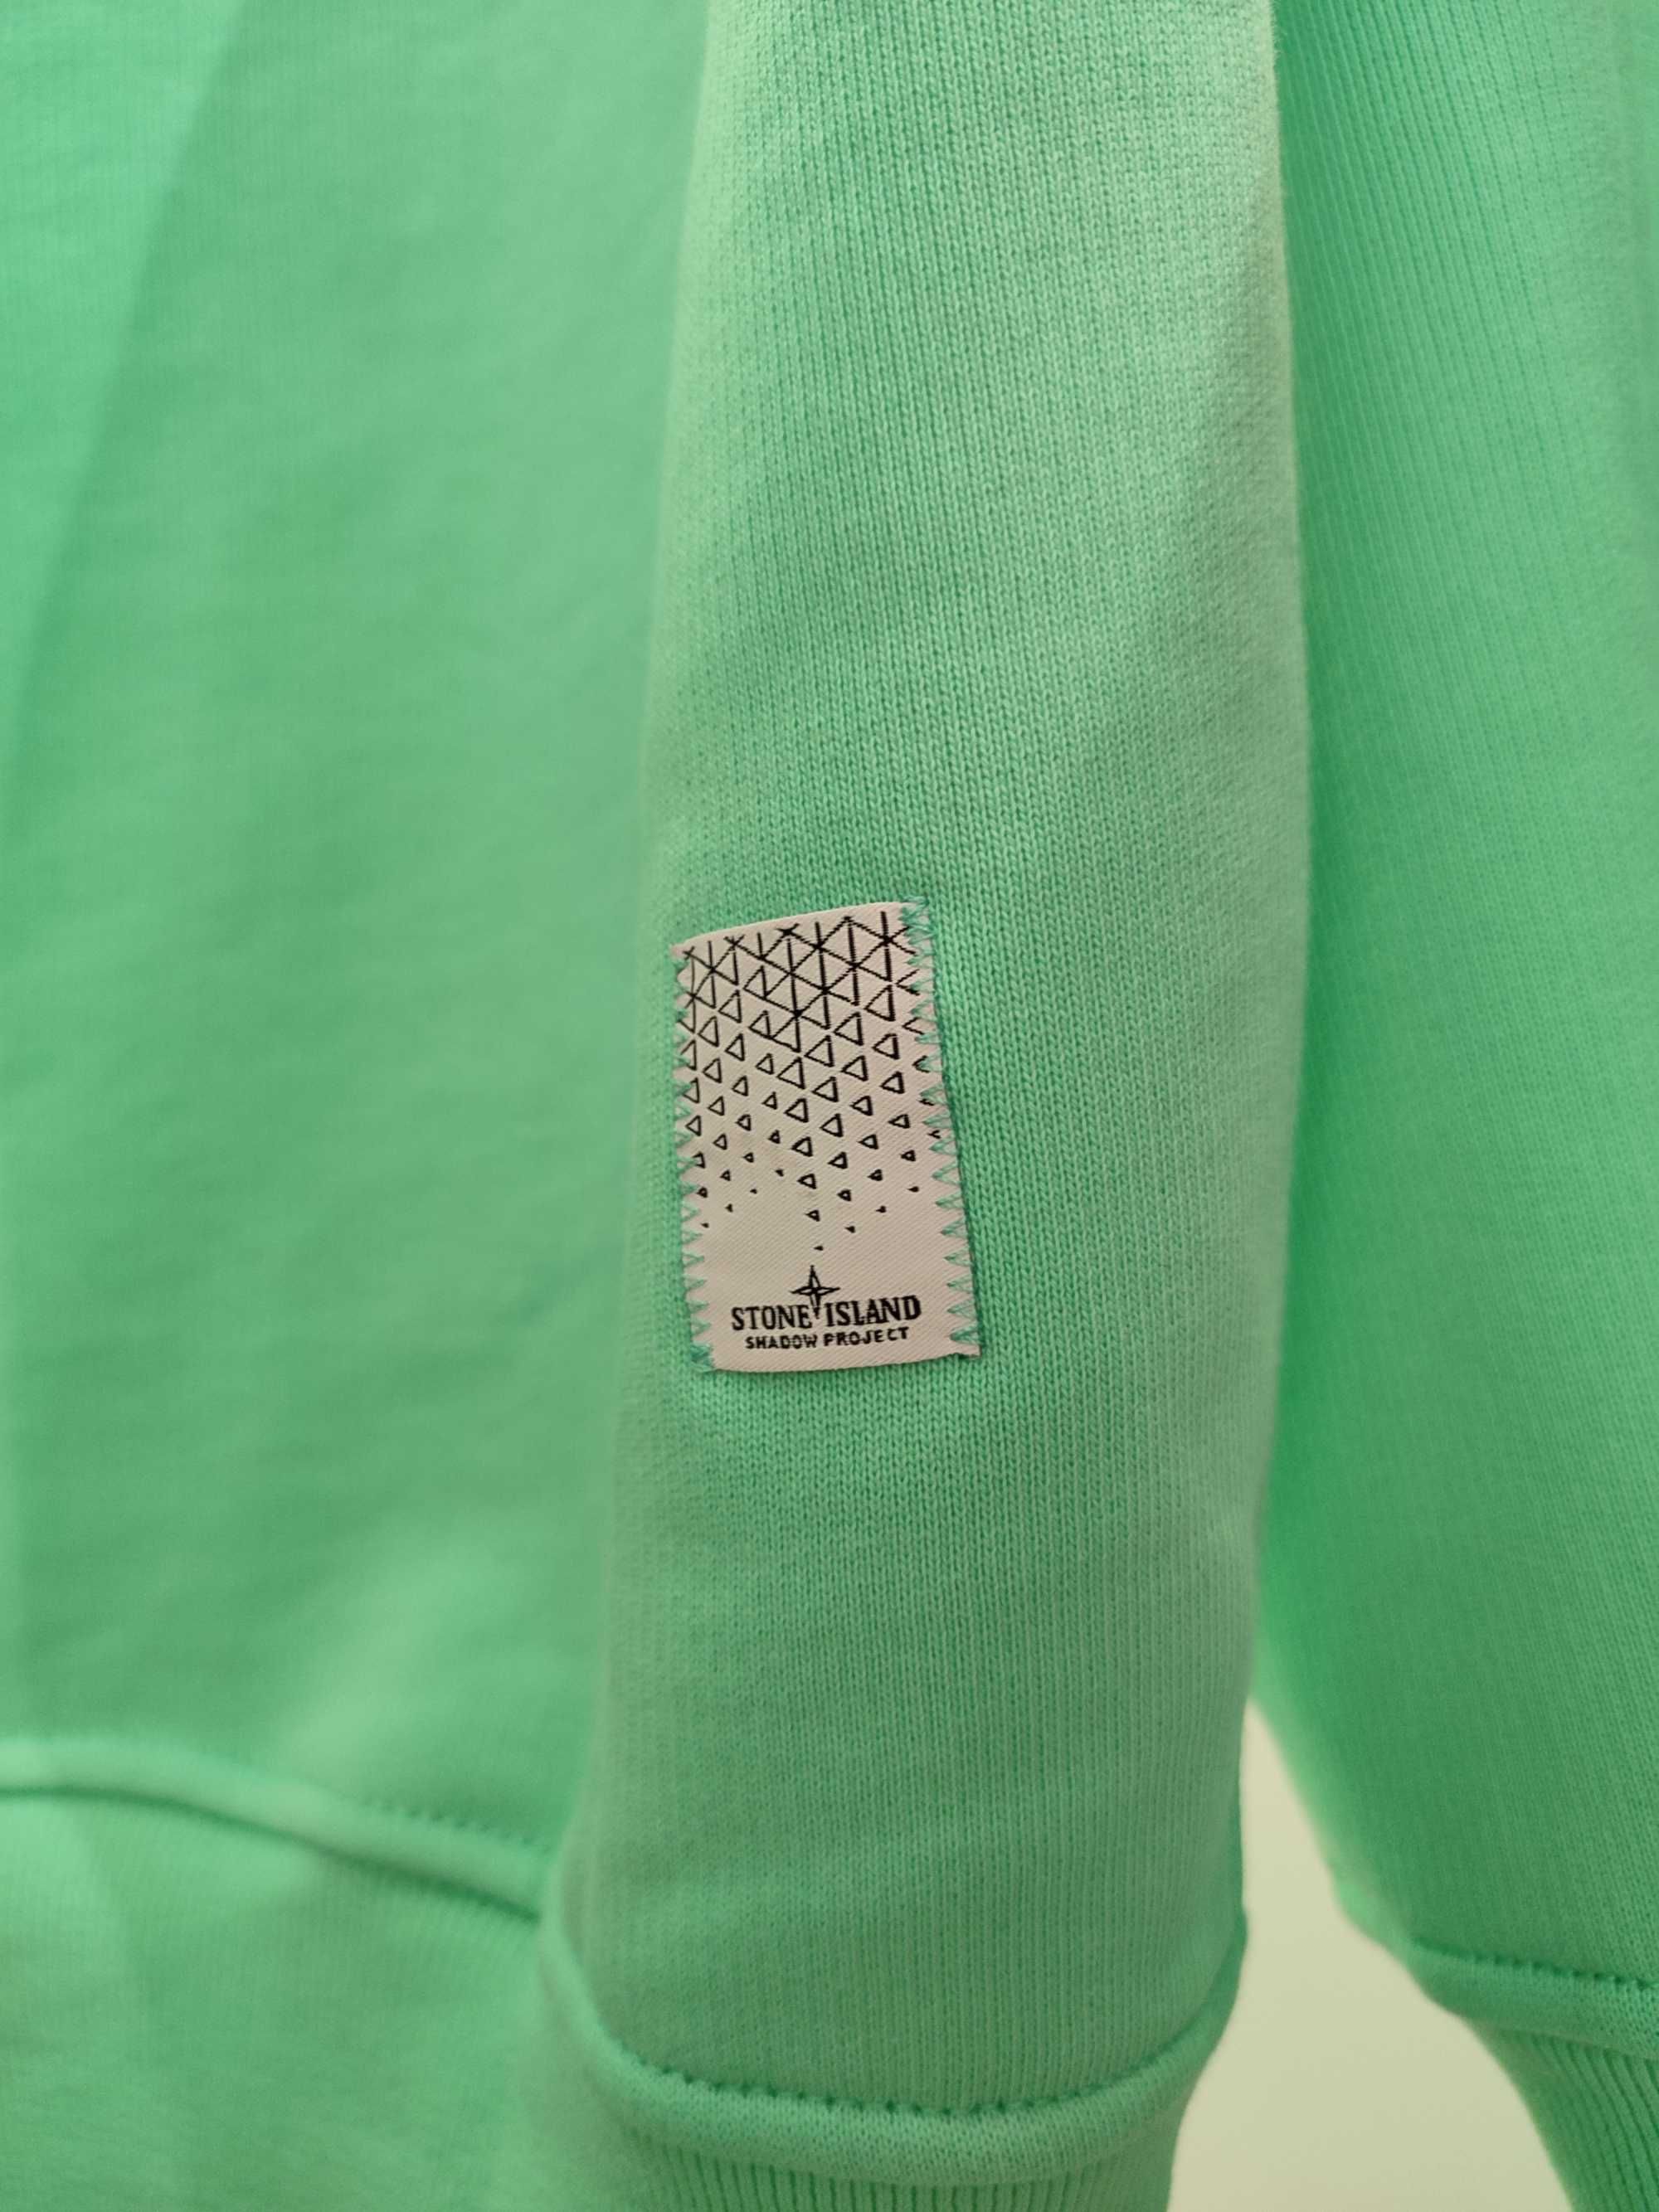 STONE ISLAND 60219 Hooded Sweatshirt Embroidery Cotton Fleece Light